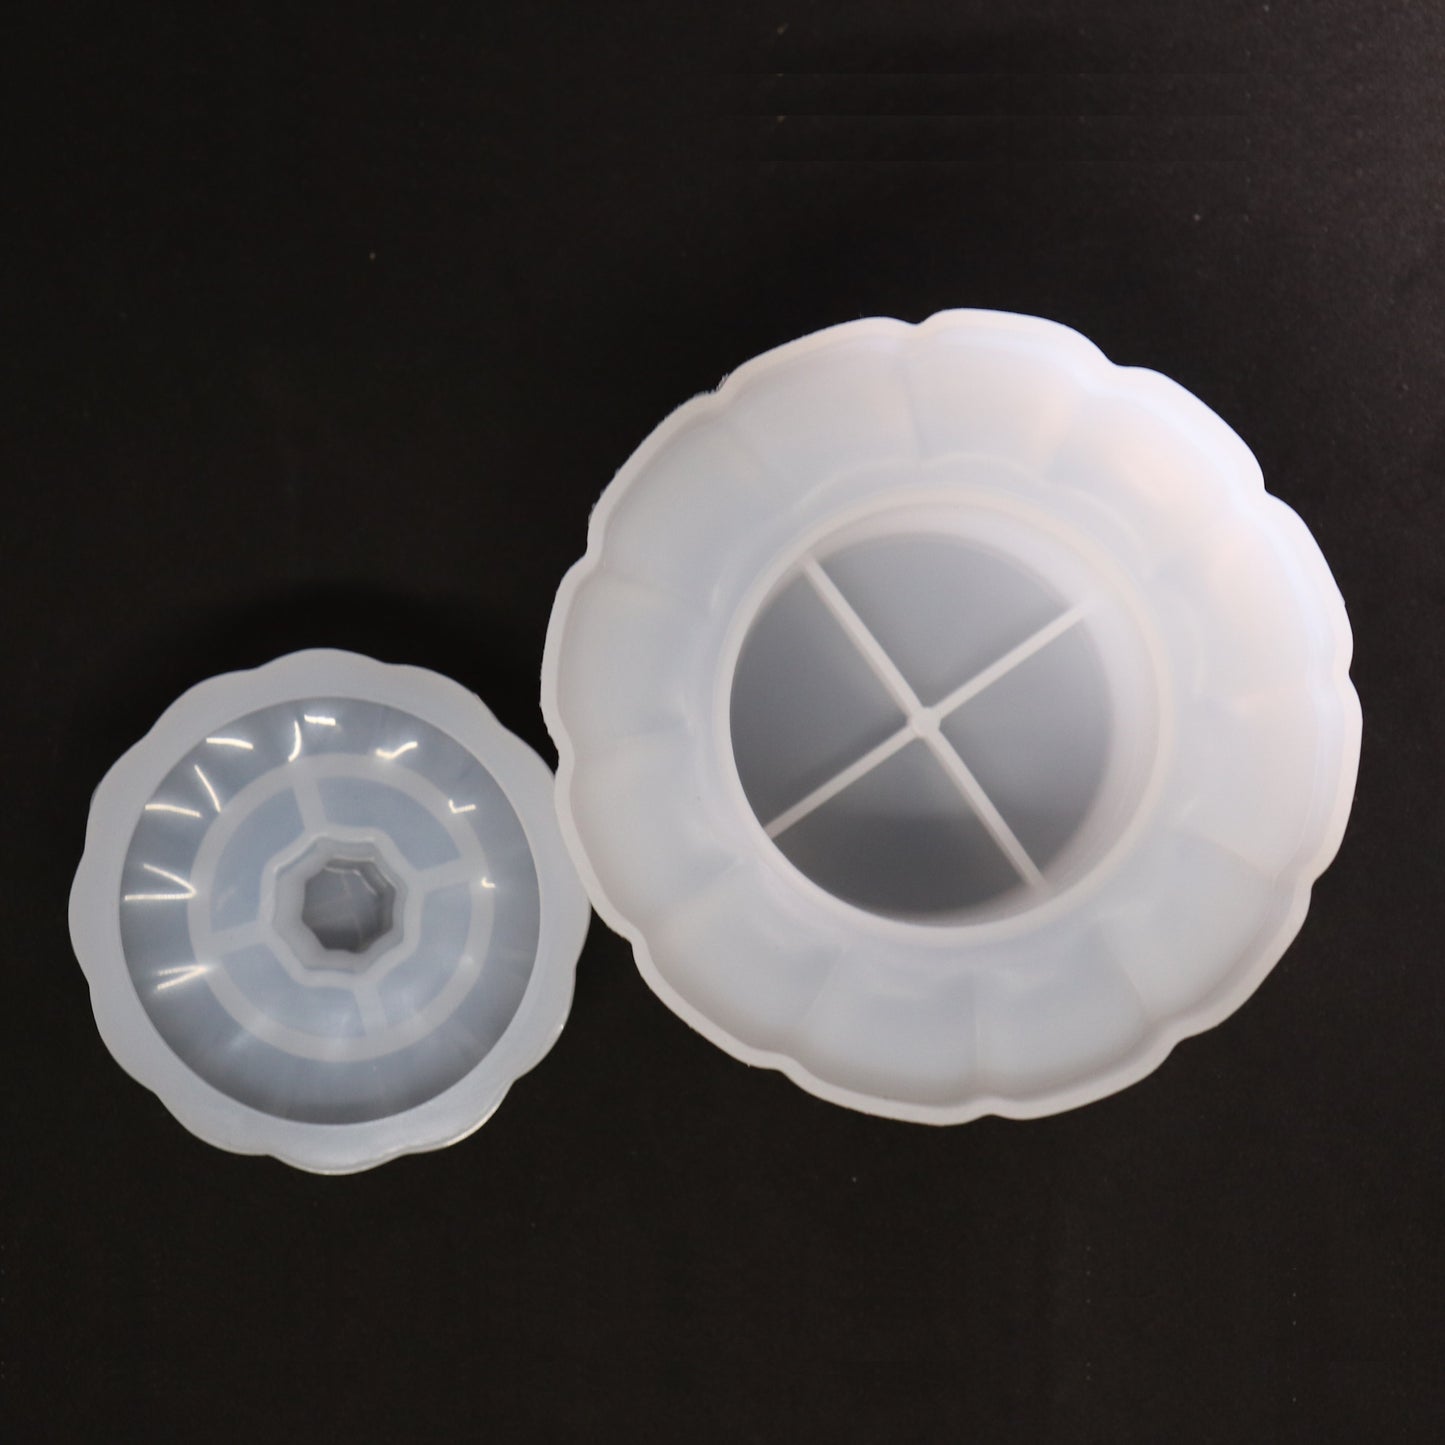 Silikonform 3D Kürbis mit Deckel Gießform für Epoxidharz, Raysin ca. 10 cm